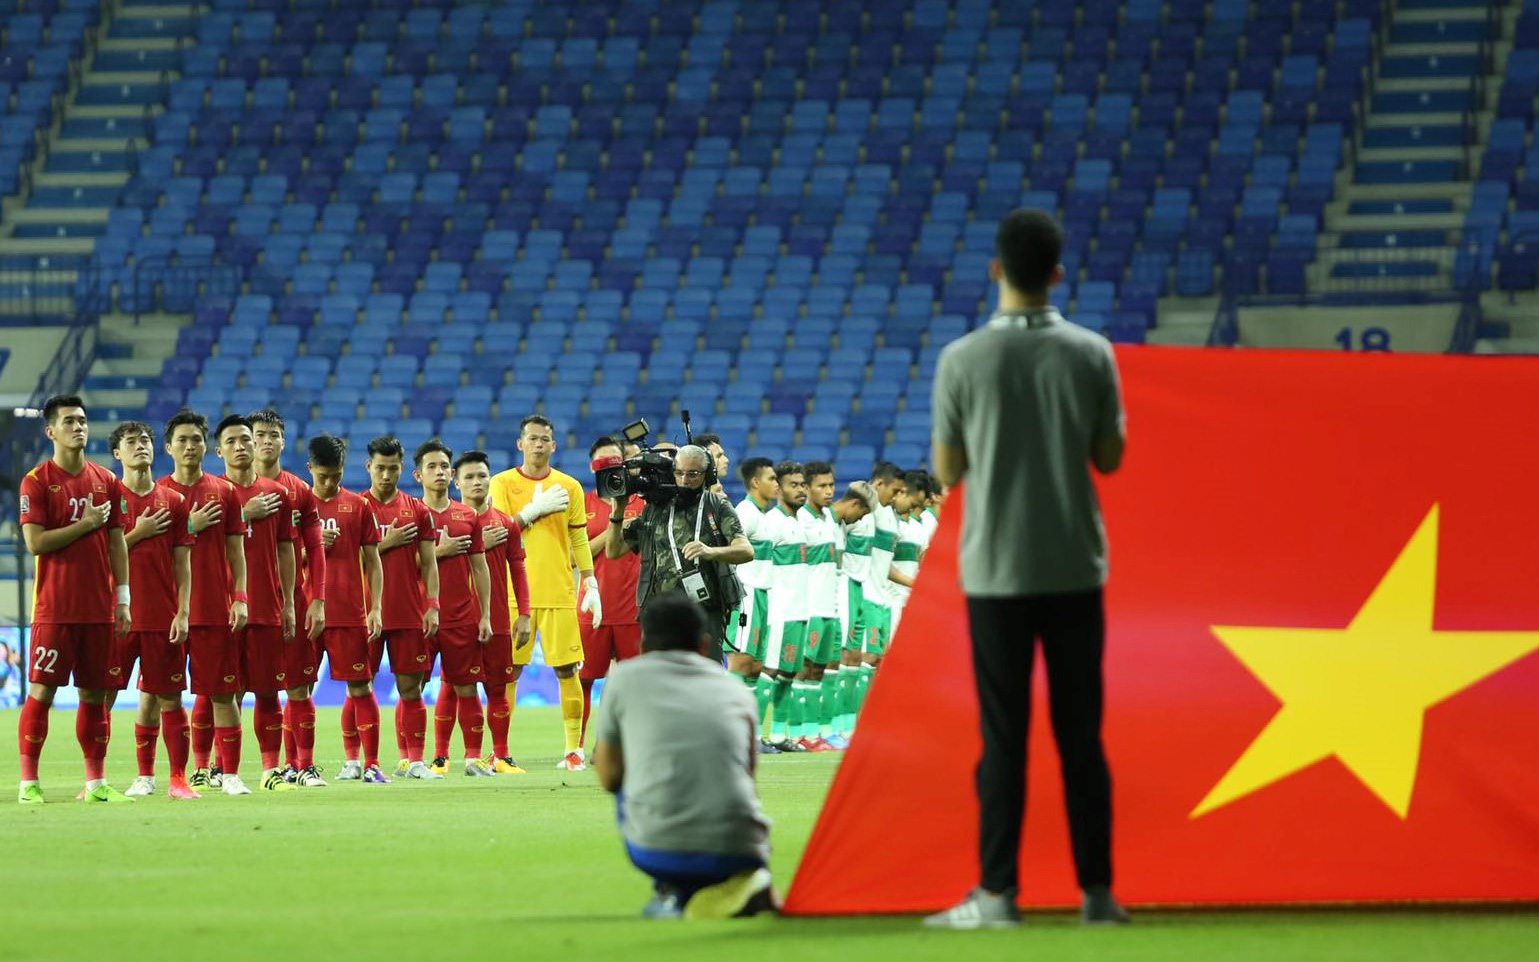 Xúc động hình ảnh tuyển Việt Nam đặt tay lên ngực trái, thực hiện lễ chào cờ đặc biệt ở trận gặp Indonesia